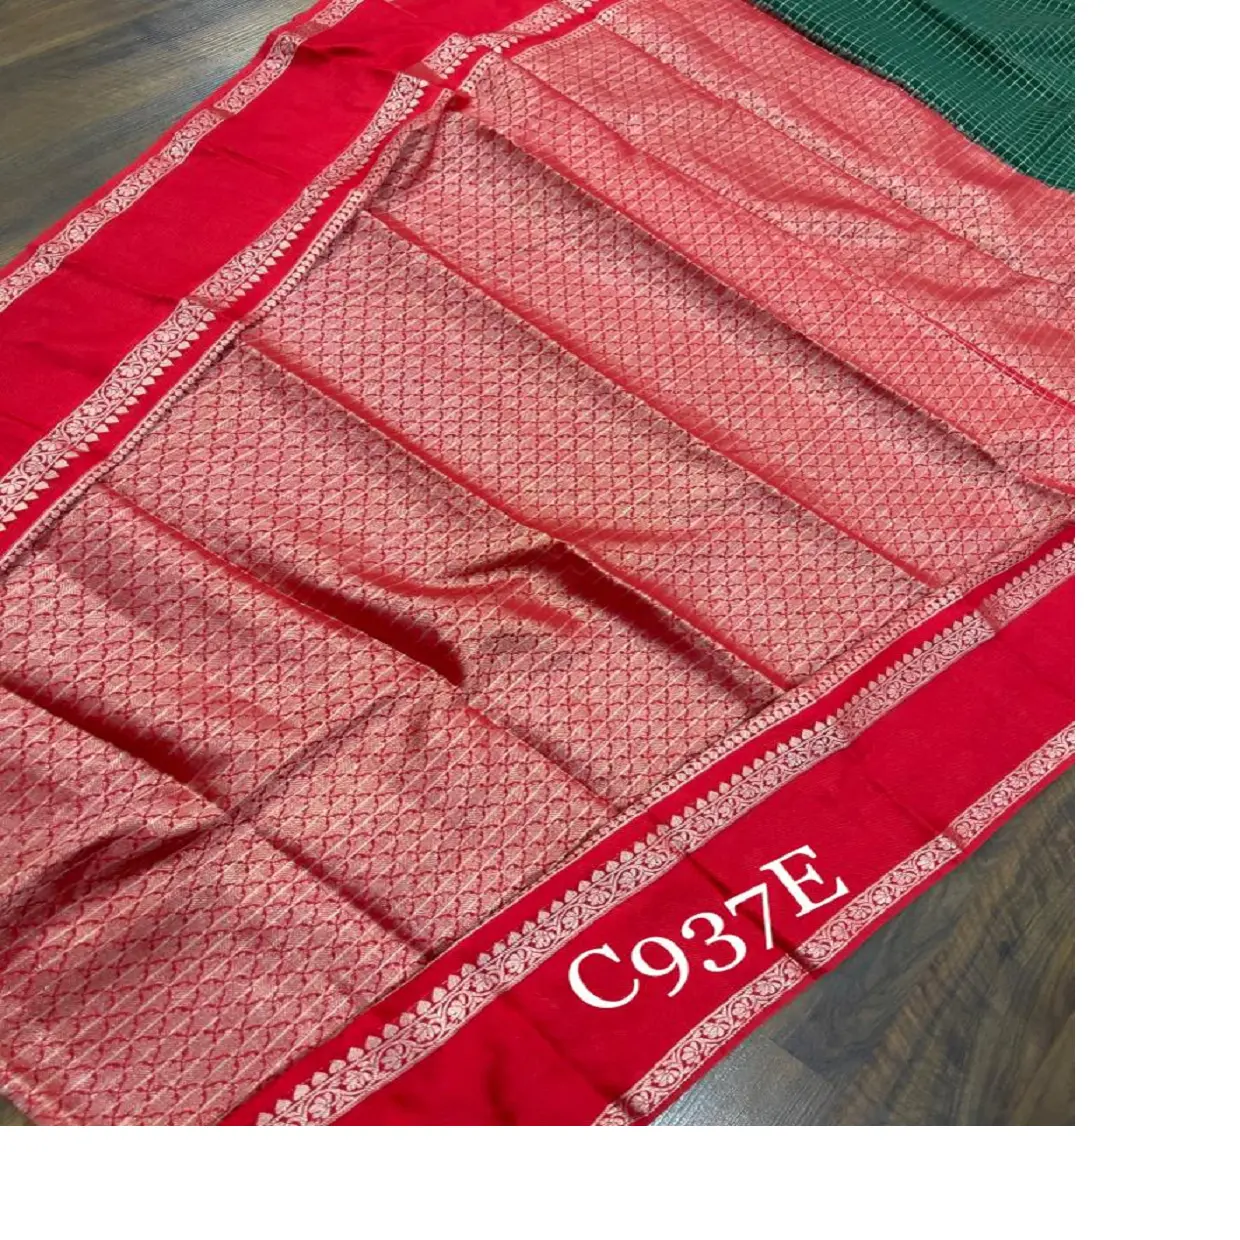 Saris de seda de brocado hechos a mano hechos a medida disponibles en color rojo por encargo ideal para reventa por diseñadores textiles